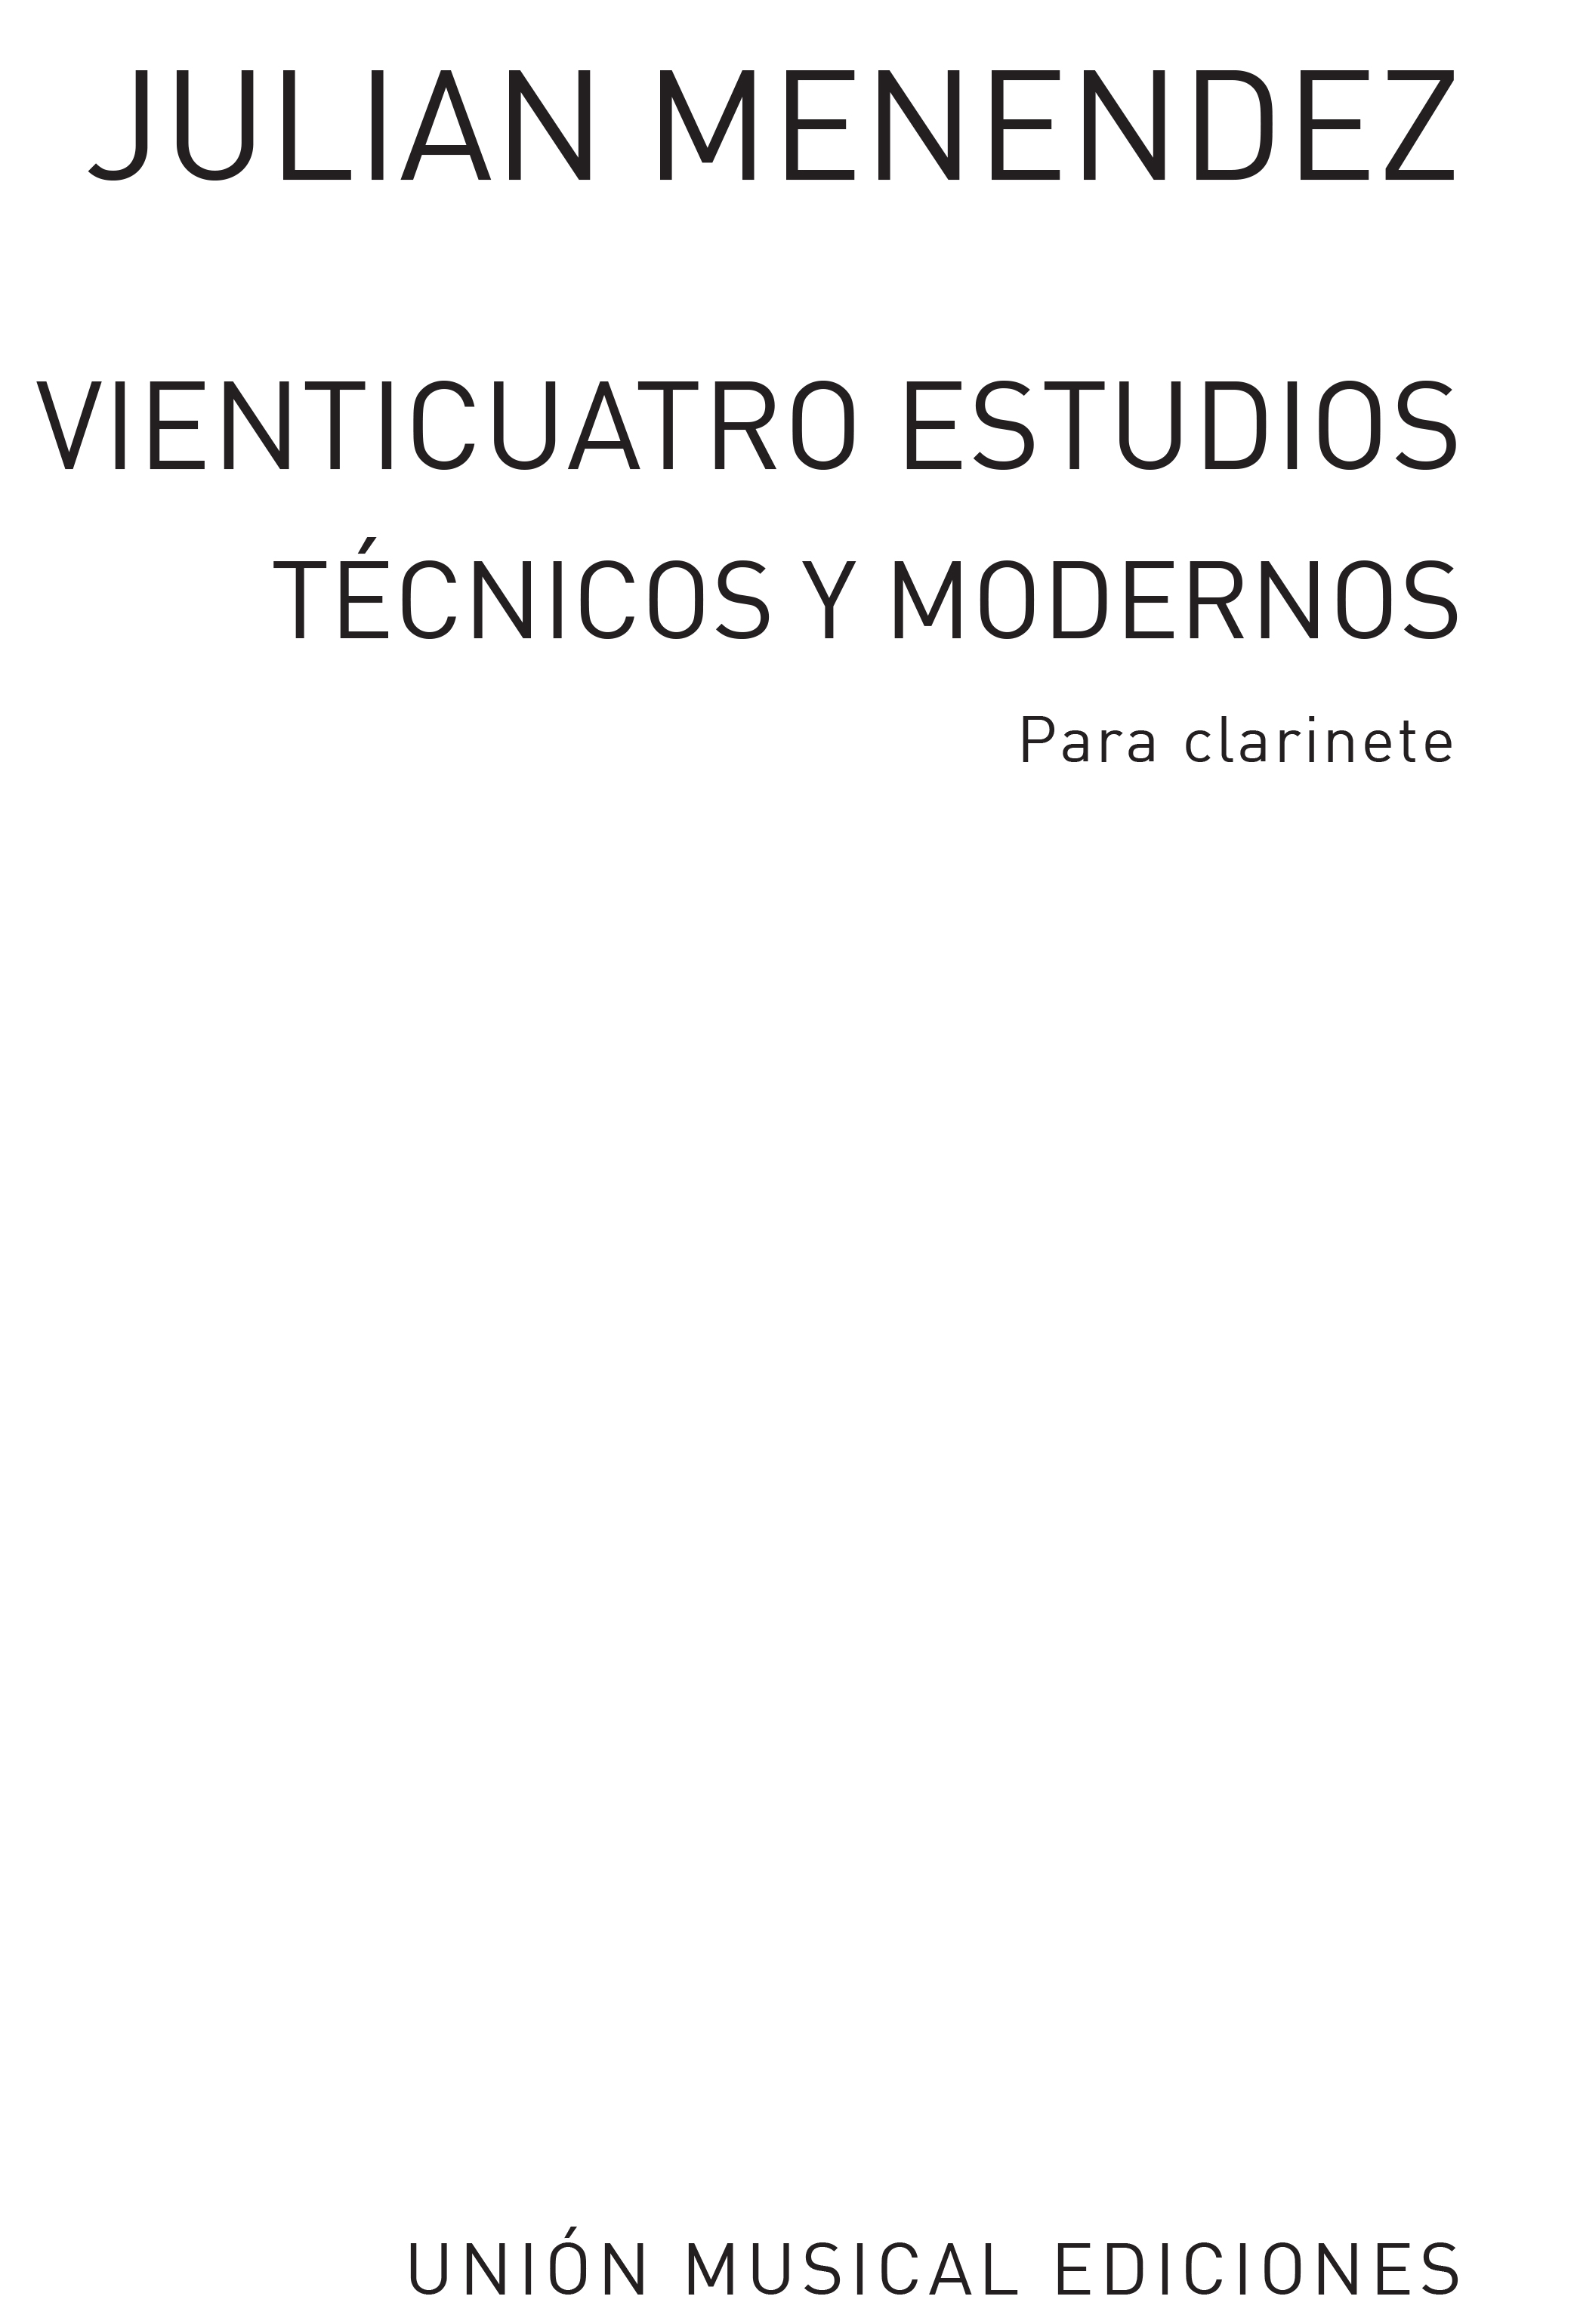 Menendez: Veinticuatro Estudios Tecnicos Clarinet